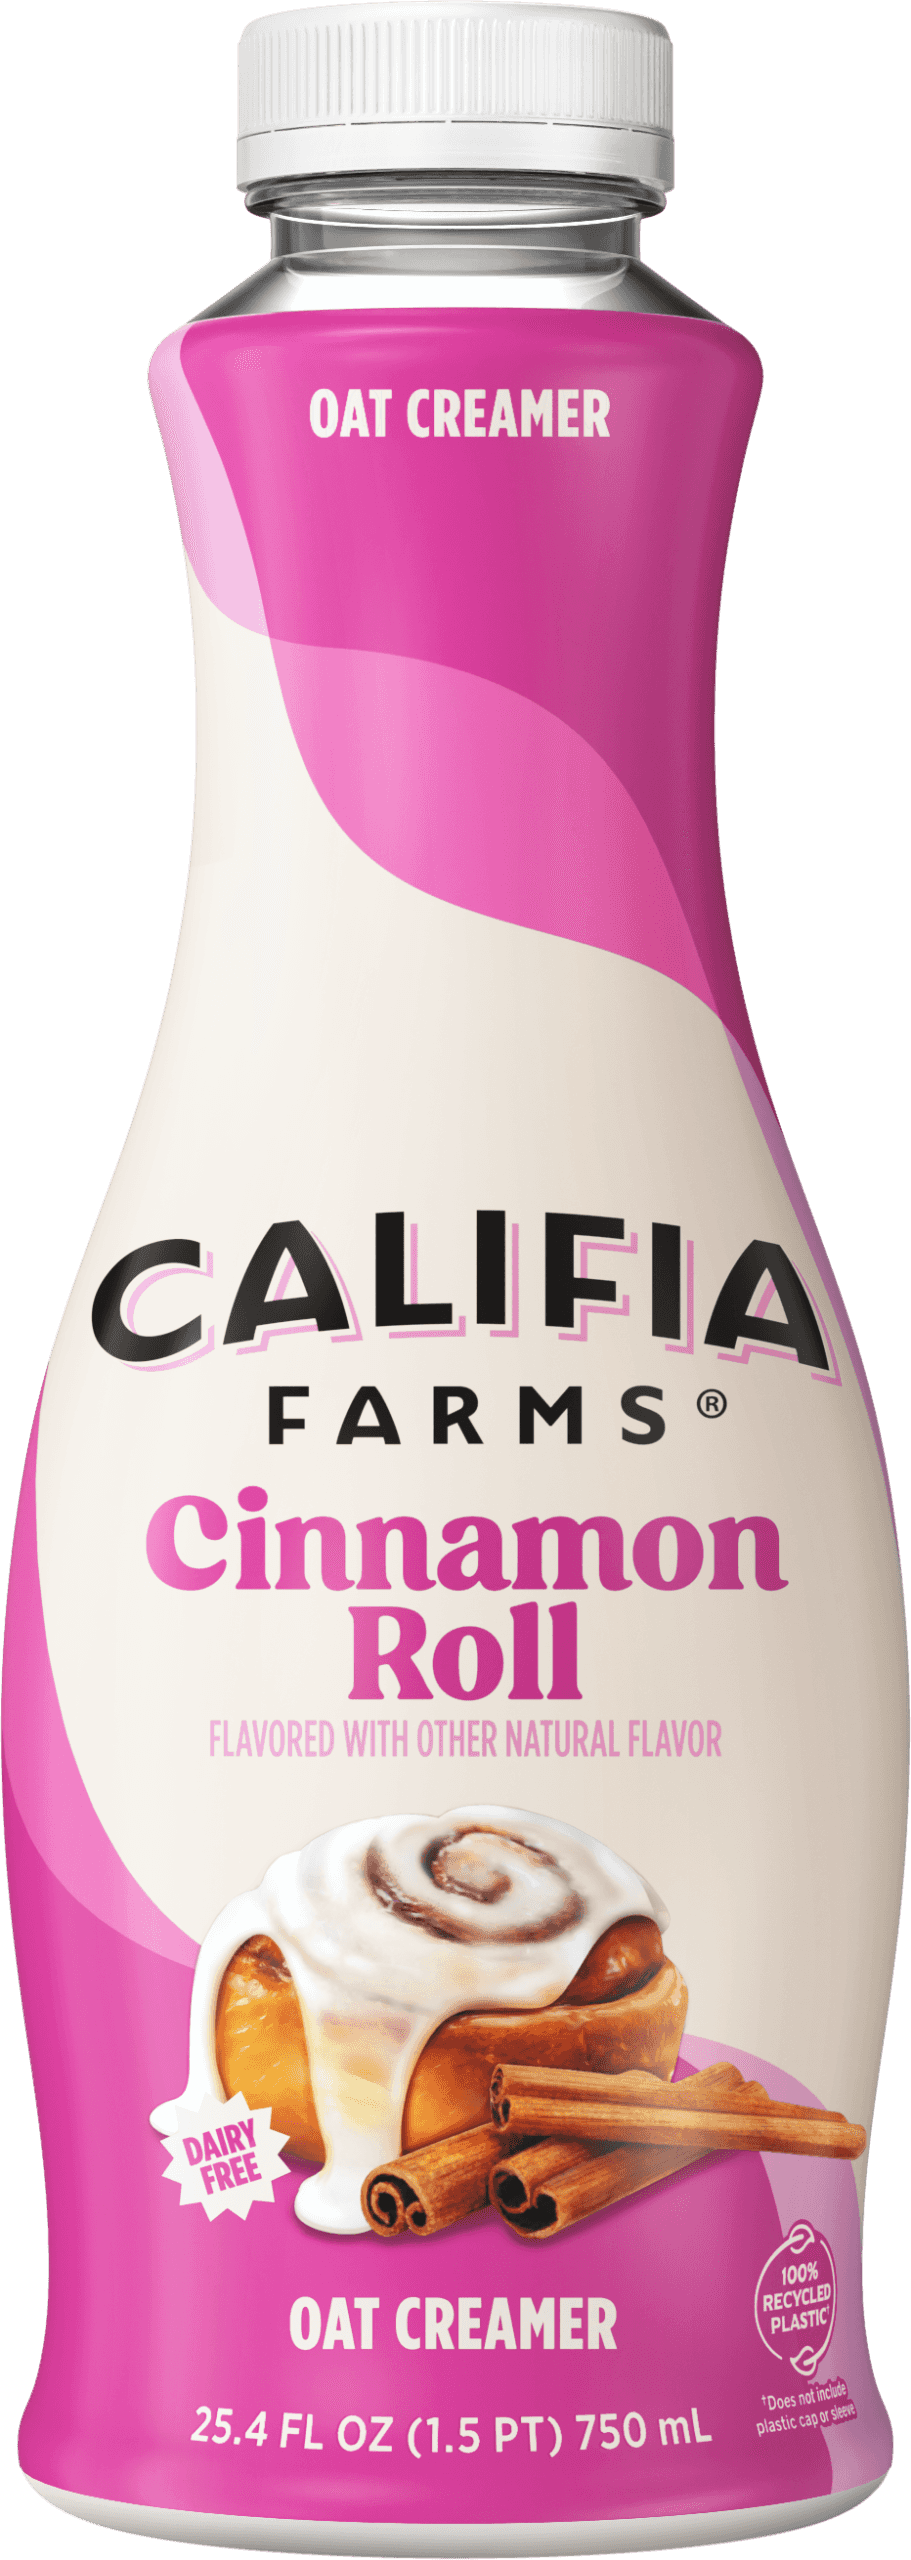 Cinnamon Roll Oat Creamer